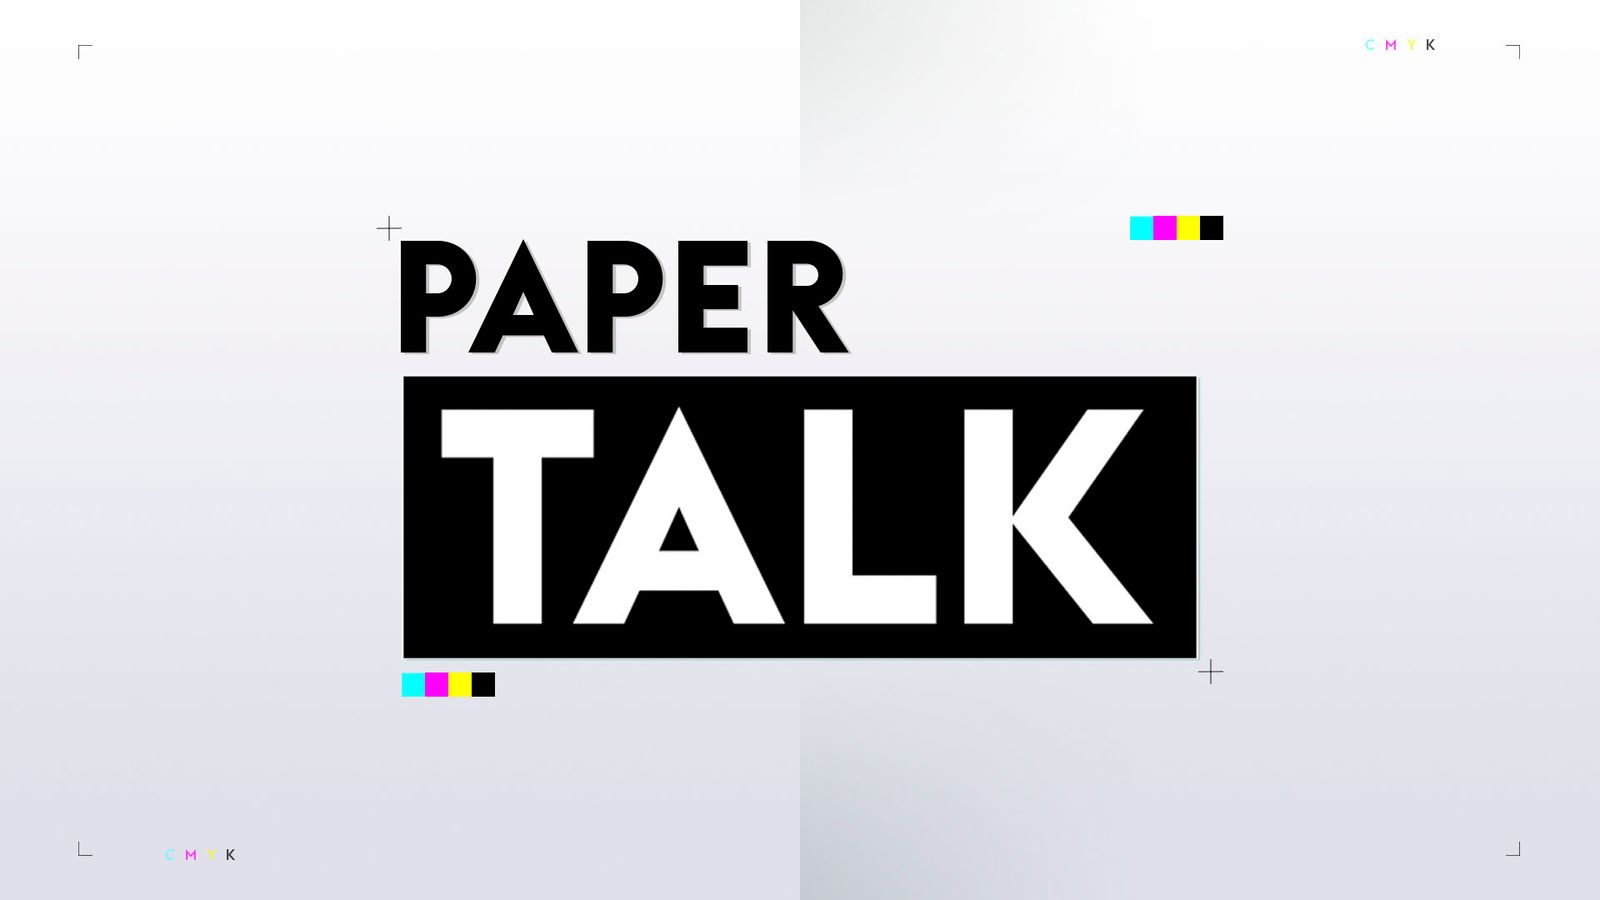 แมนเชสเตอร์ ยูไนเต็ด ปฏิเสธโอกาสเซ็นสัญญากับ คาริม เบนเซม่า – Paper Talk |  ข่าวฟุตบอล